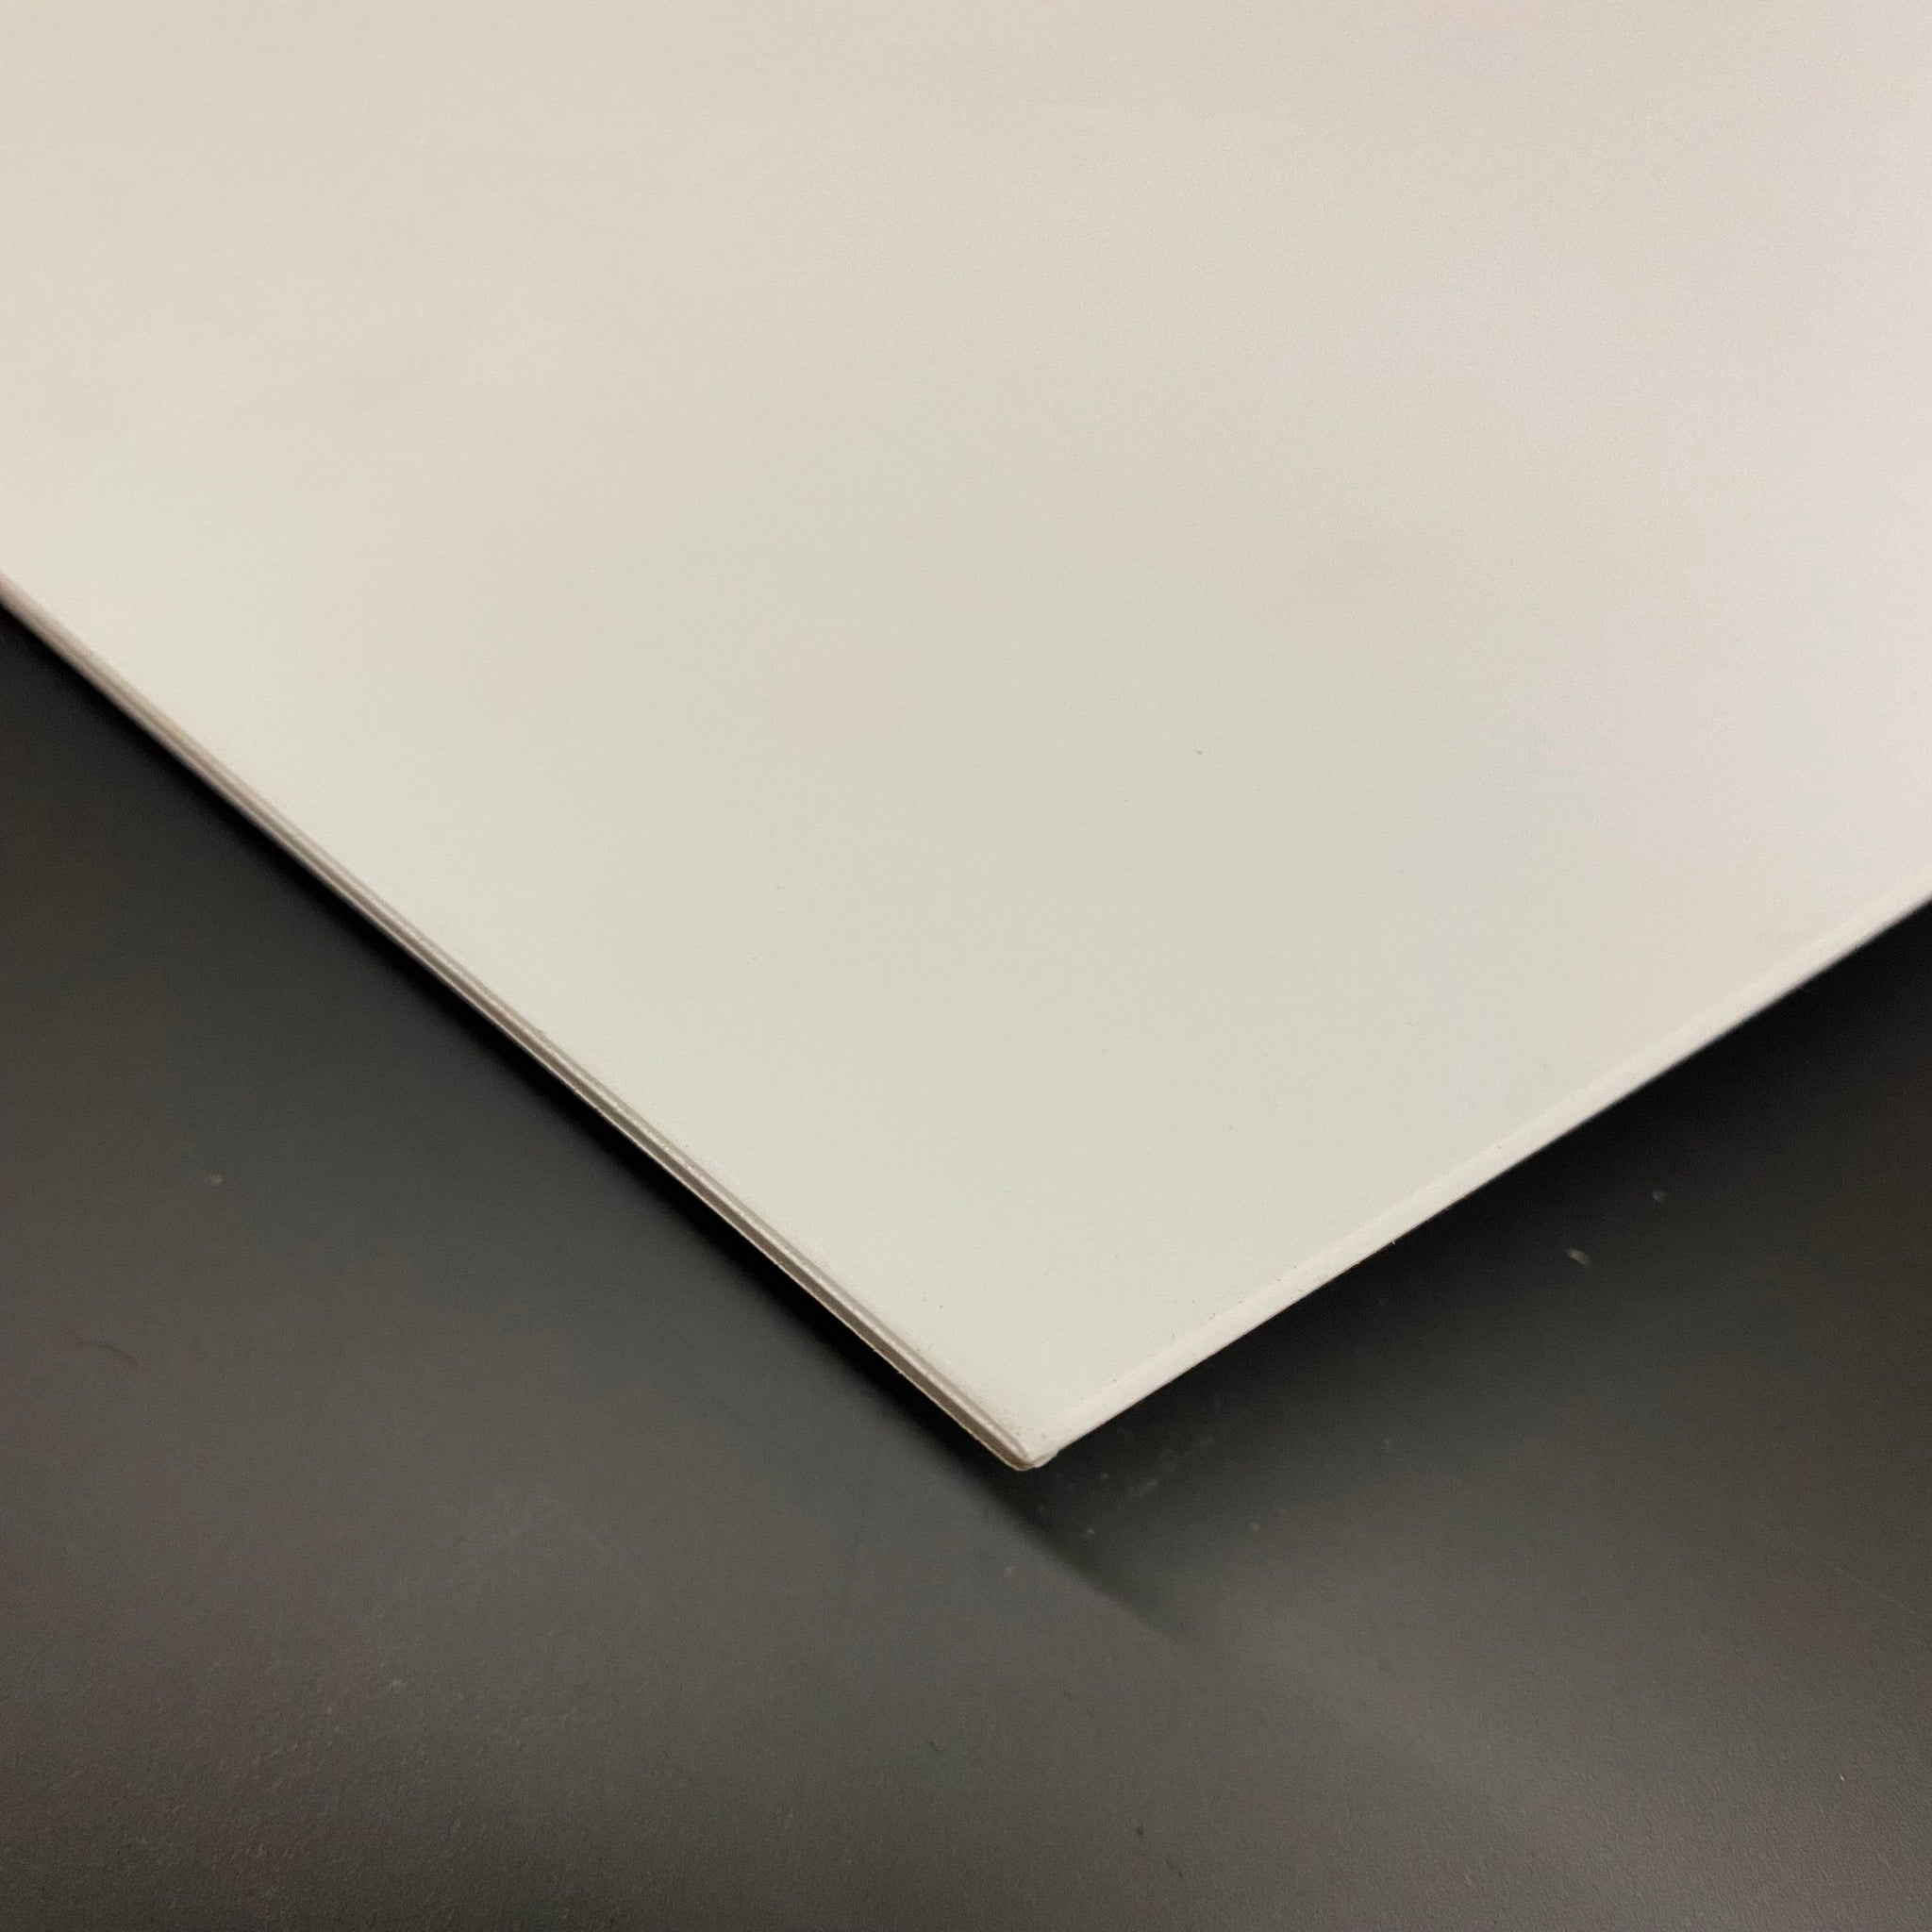 MakerBeam - 10mmx10mm 1 piece polystyrene sheet, 300mmx200mmx3 mm, white